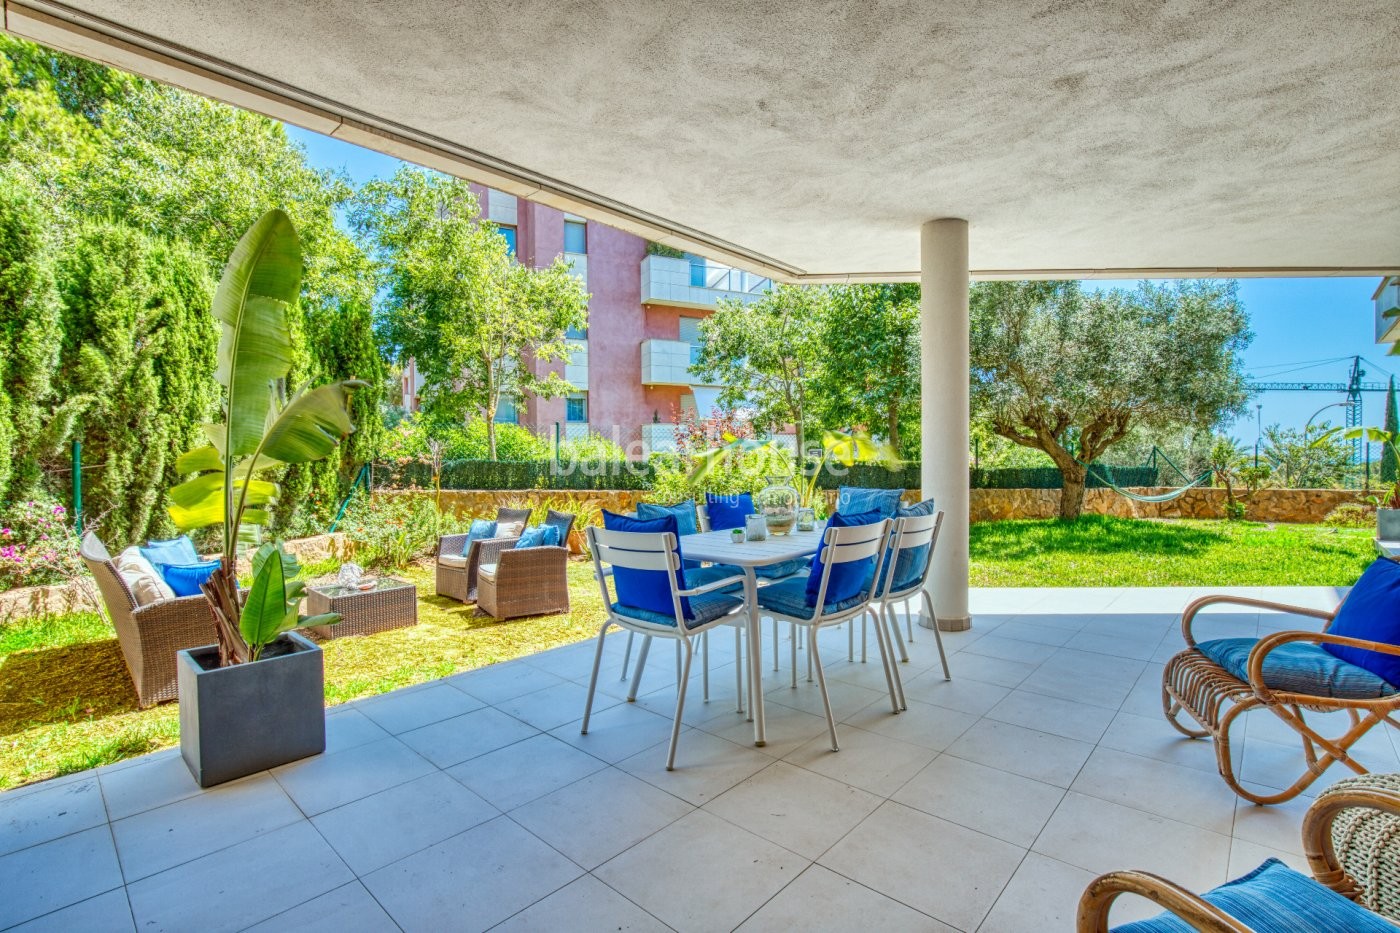 Impresionante planta baja con jardín en lujoso complejo residencial en Sol de Mallorca